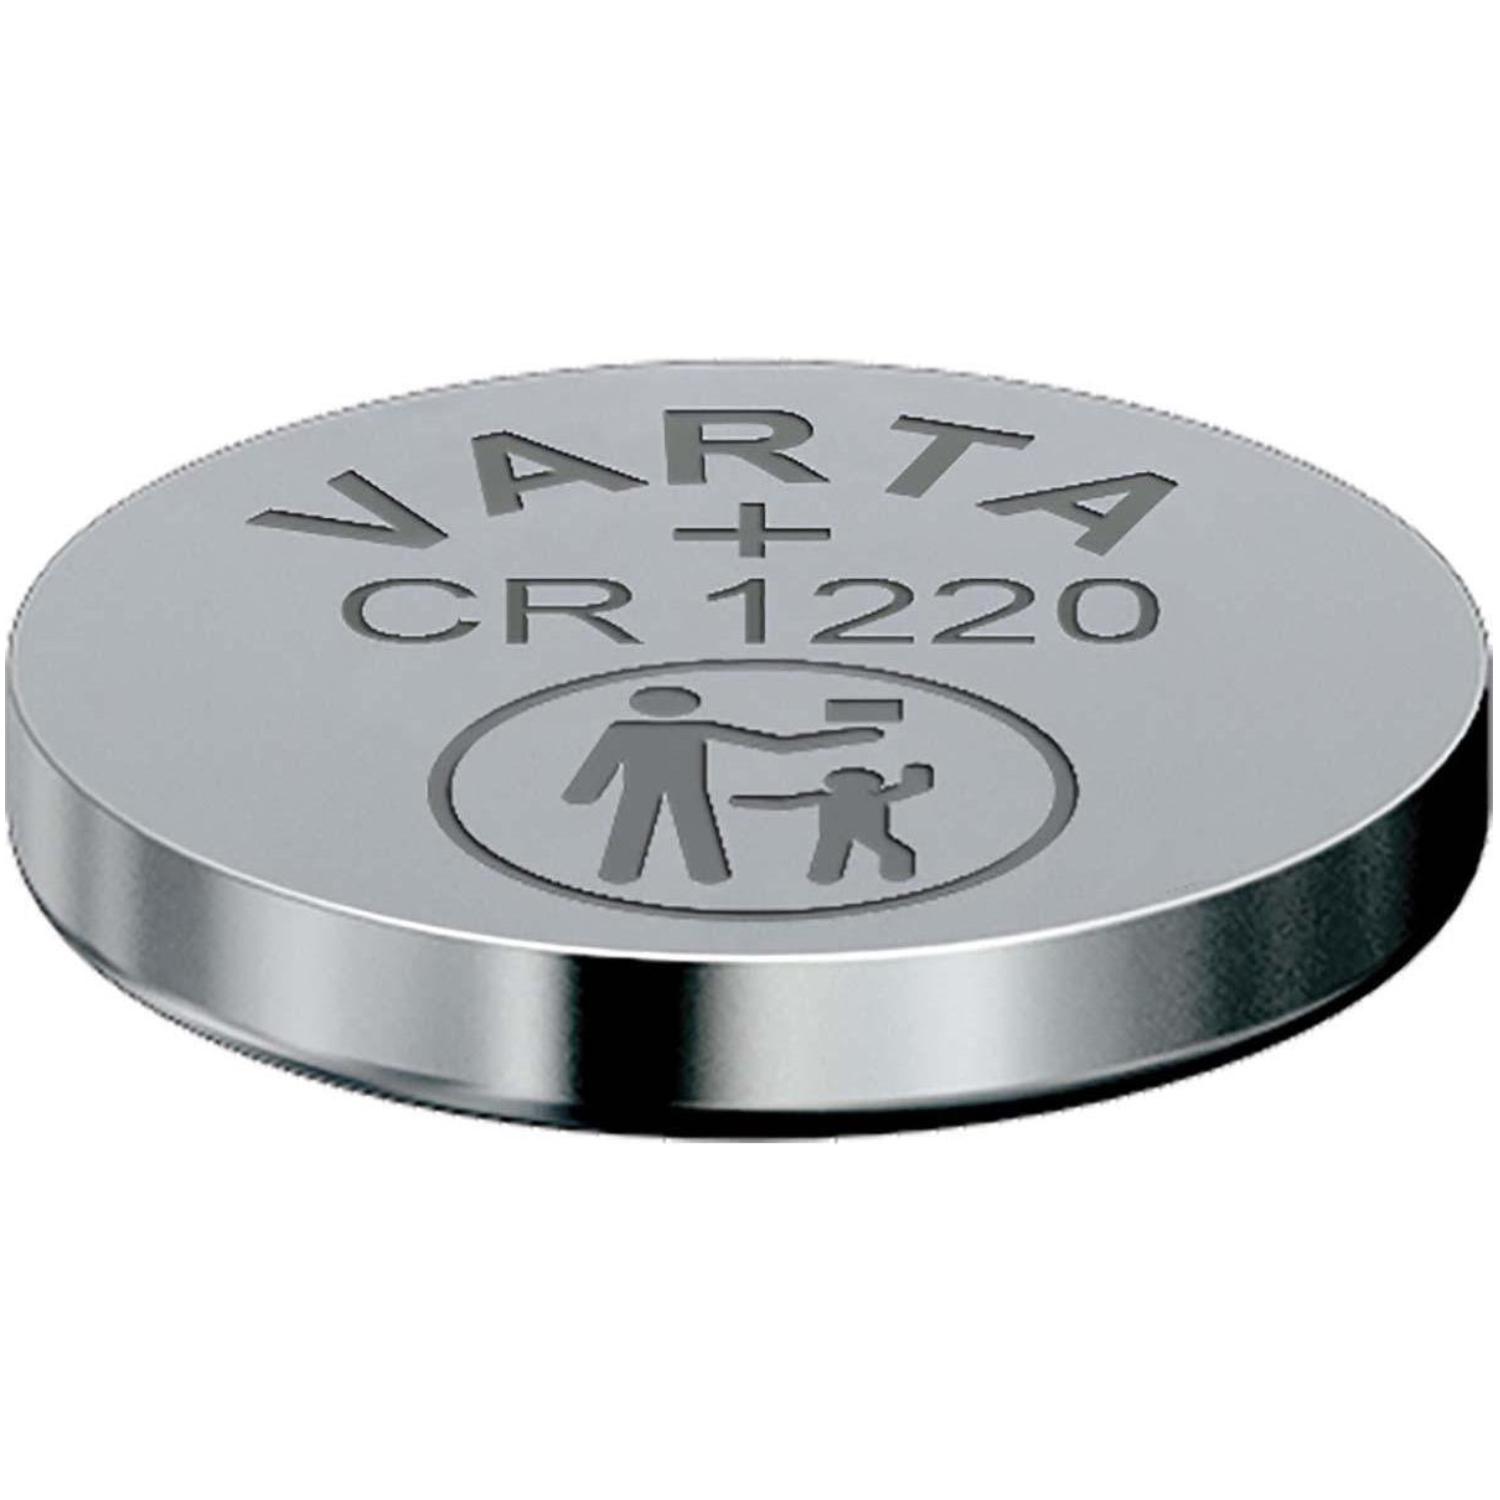 Image of CR 1220 Bli.1 - Coin cell battery lithium 35mAh 3V CR 1220 Bli.1